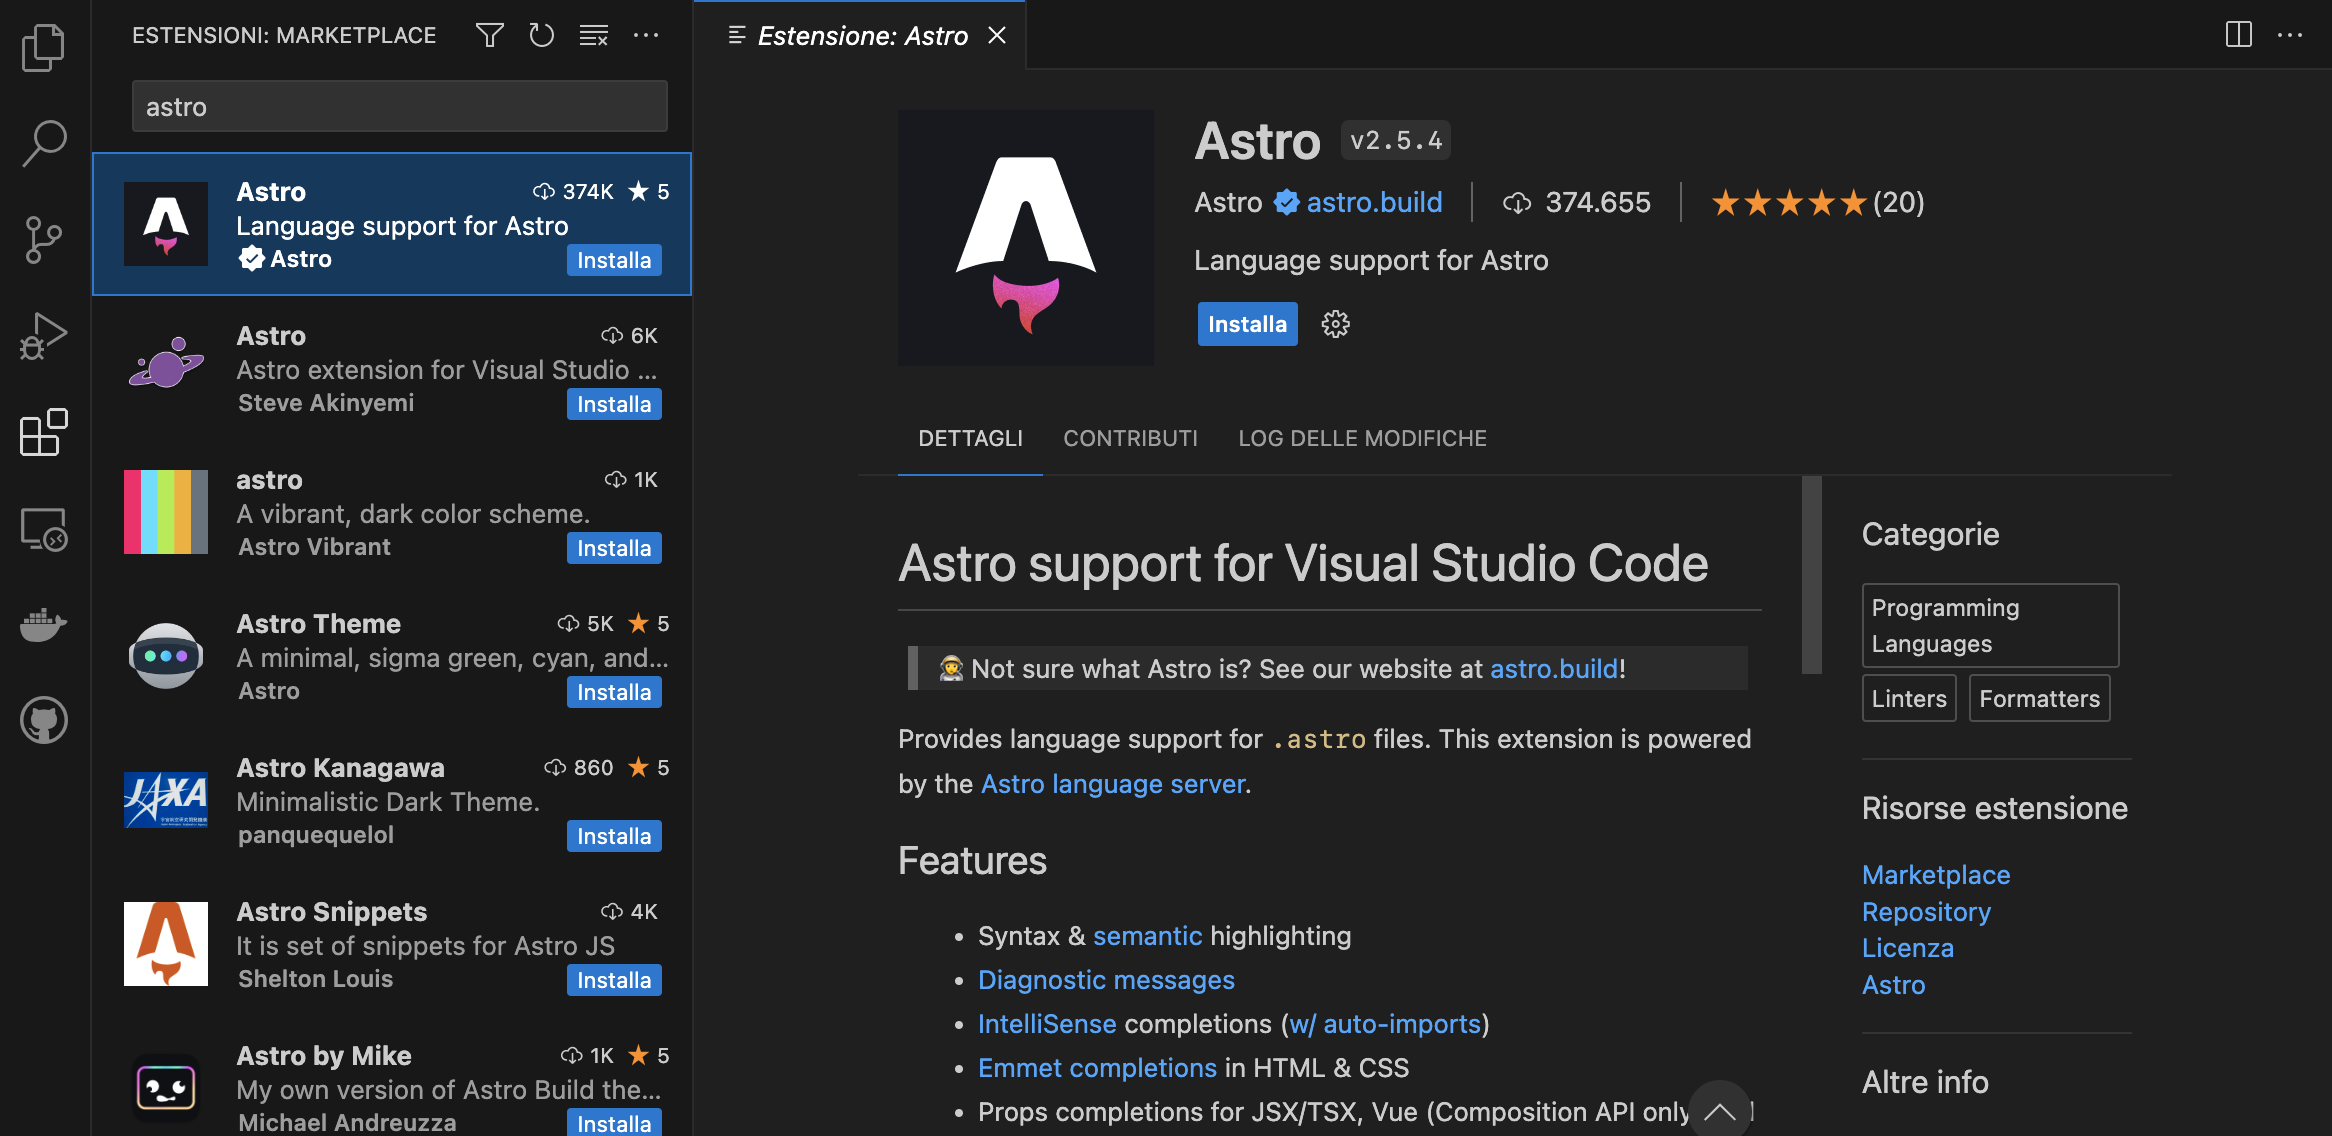 L'estensione Astro per Visual Studio Code